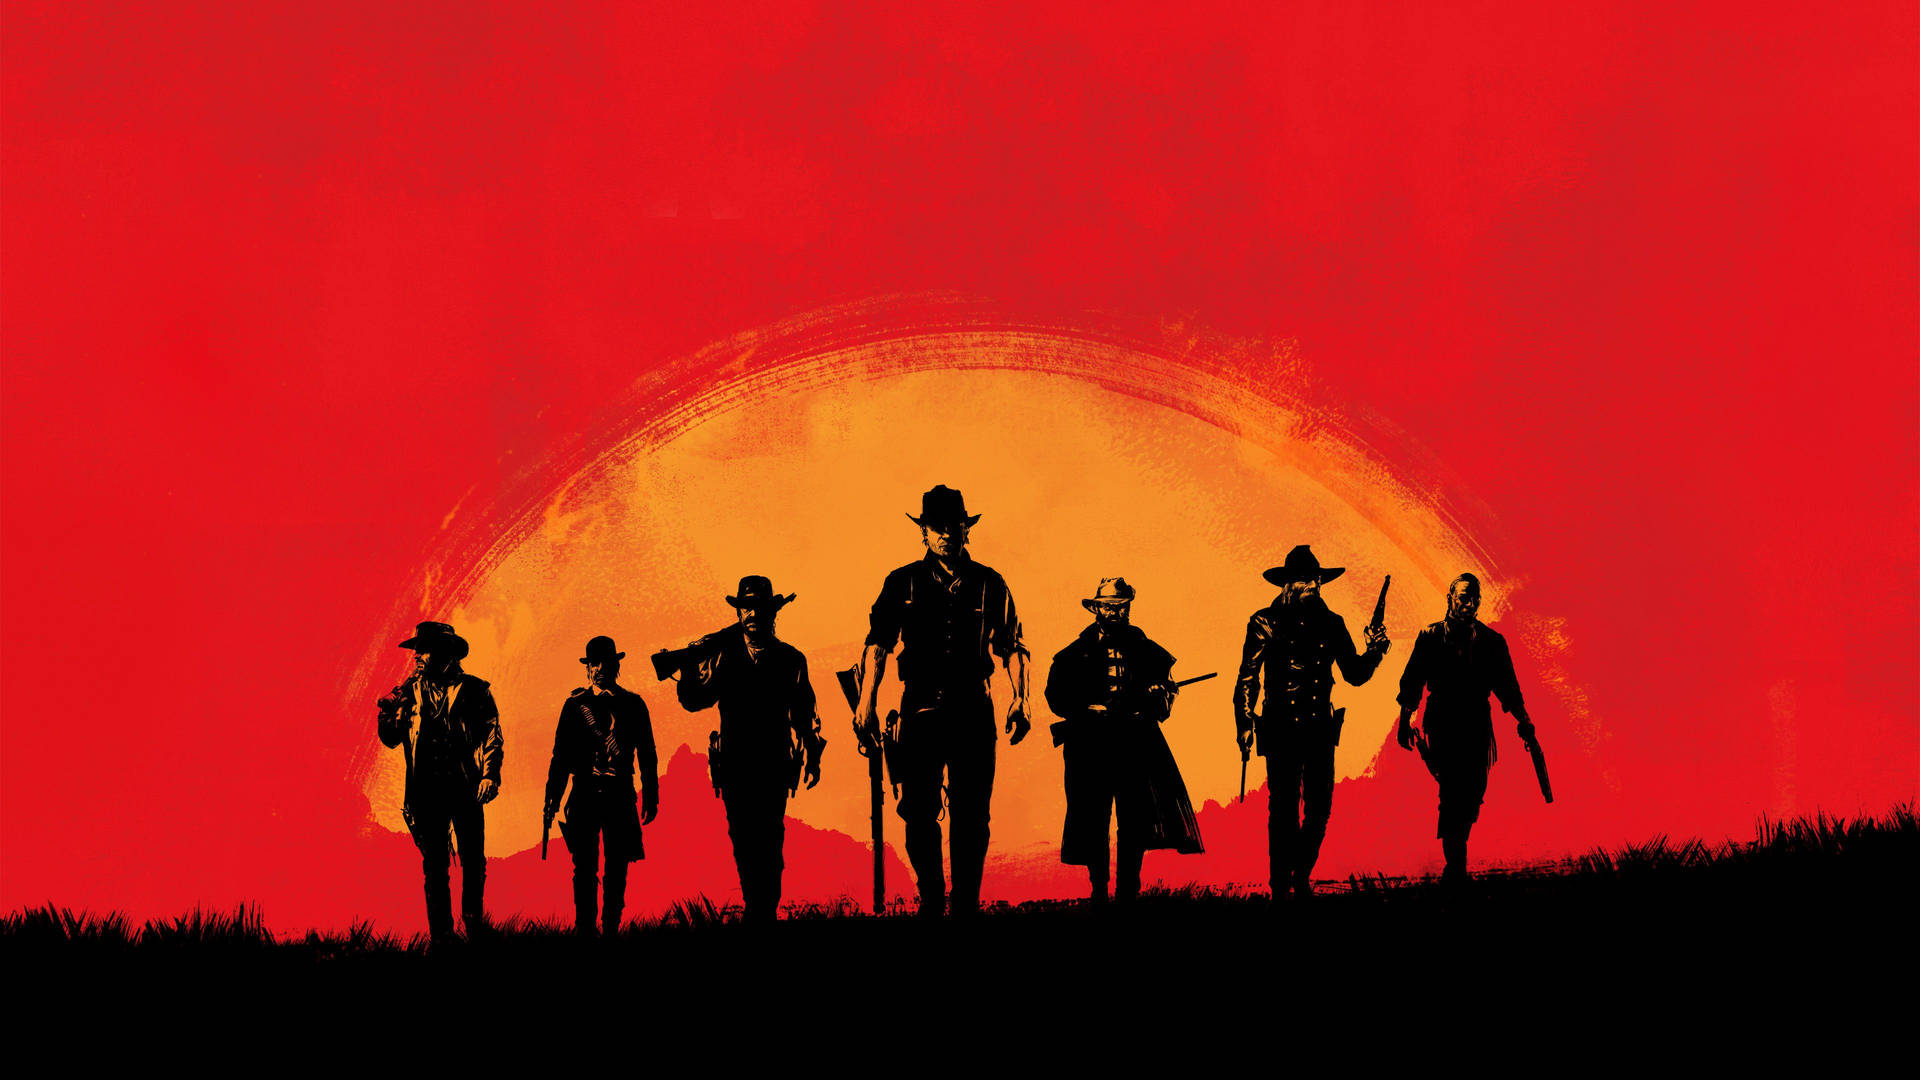 Bestesps4 Red Dead Redemption 2 Wallpaper